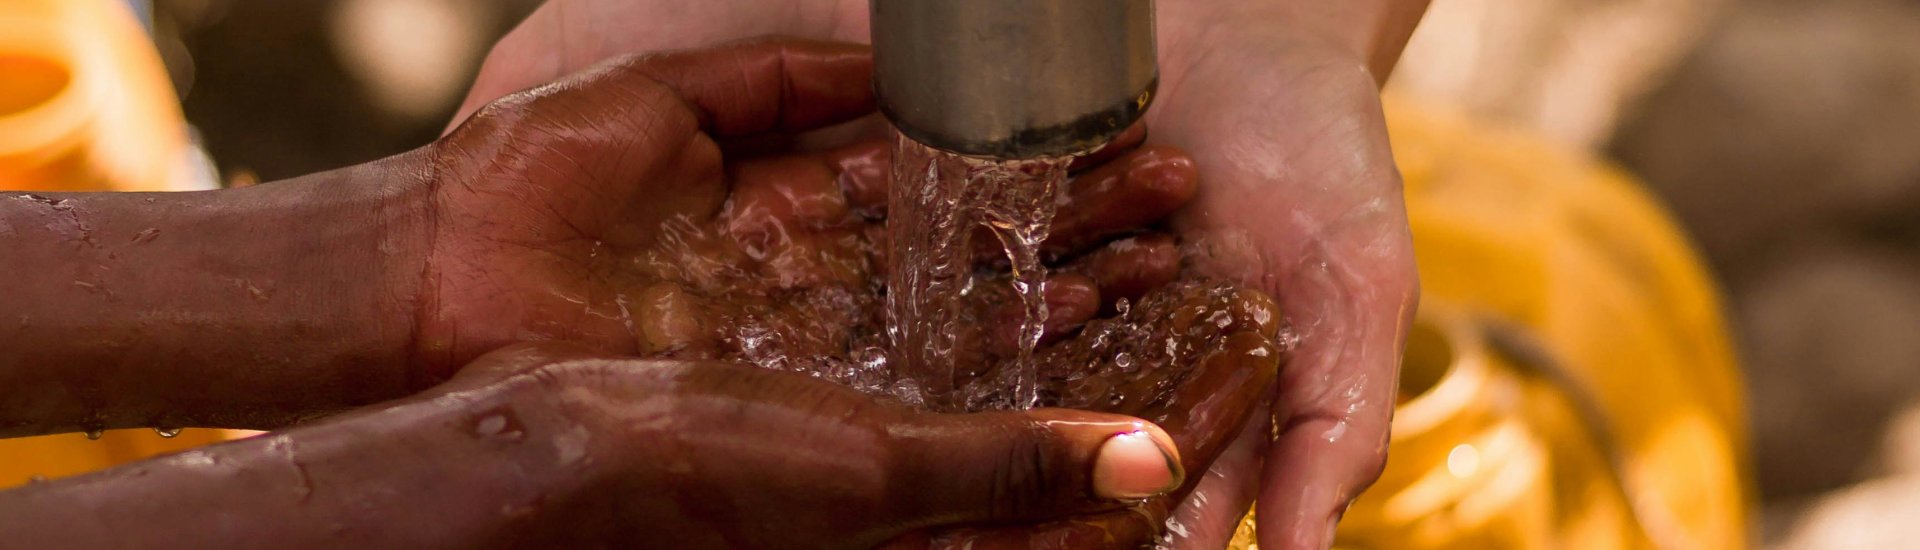 Een kind wast de handen onder een buitenkraan